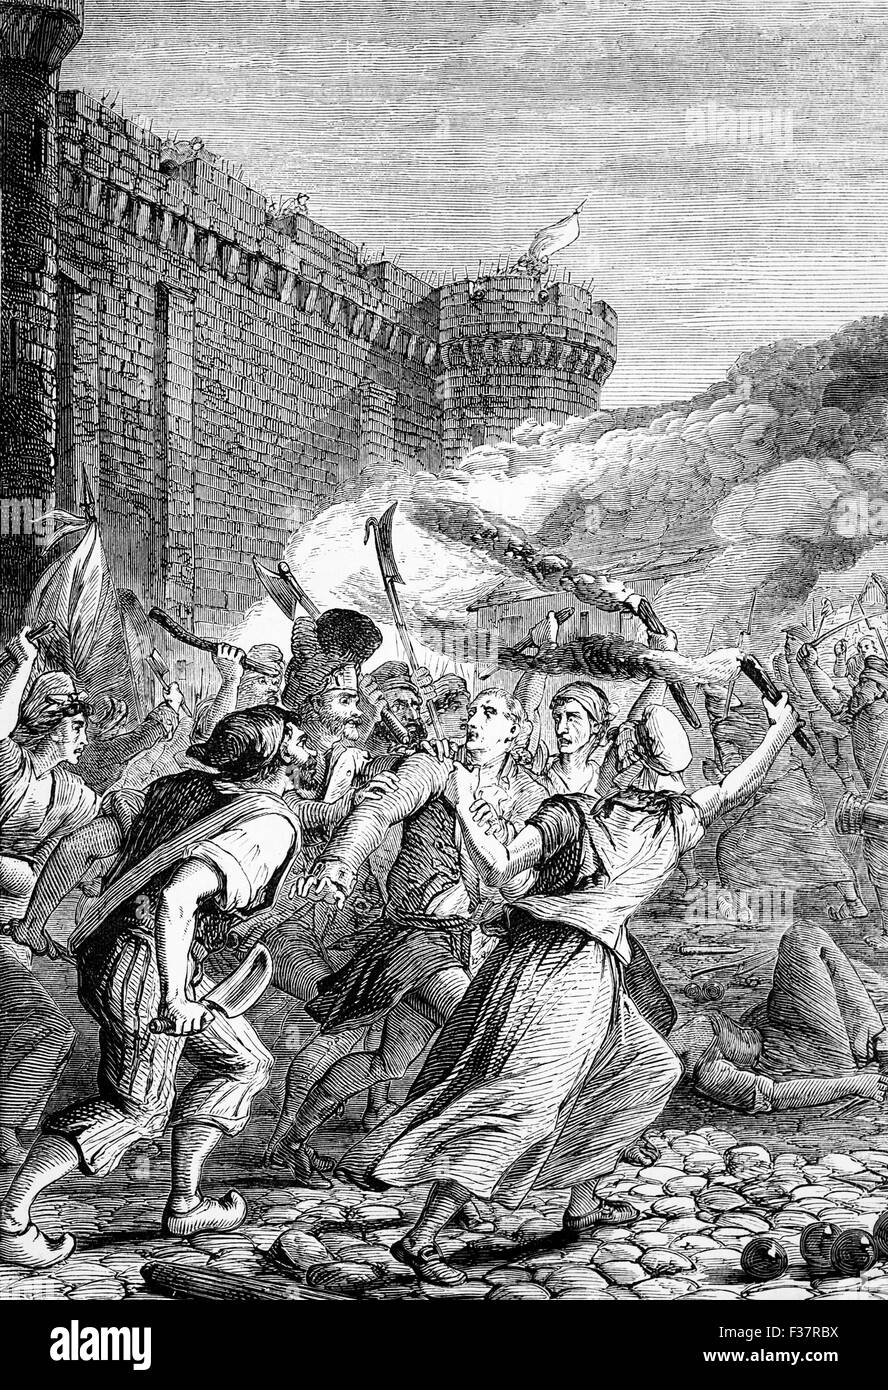 La prise de la Bastille par les révolutionnaires de Paris, le matin du 14 juillet 1789. La forteresse et prison représenté l'autorité royale dans le centre de Paris et sa chute a été l'explosion de la Révolution française Banque D'Images